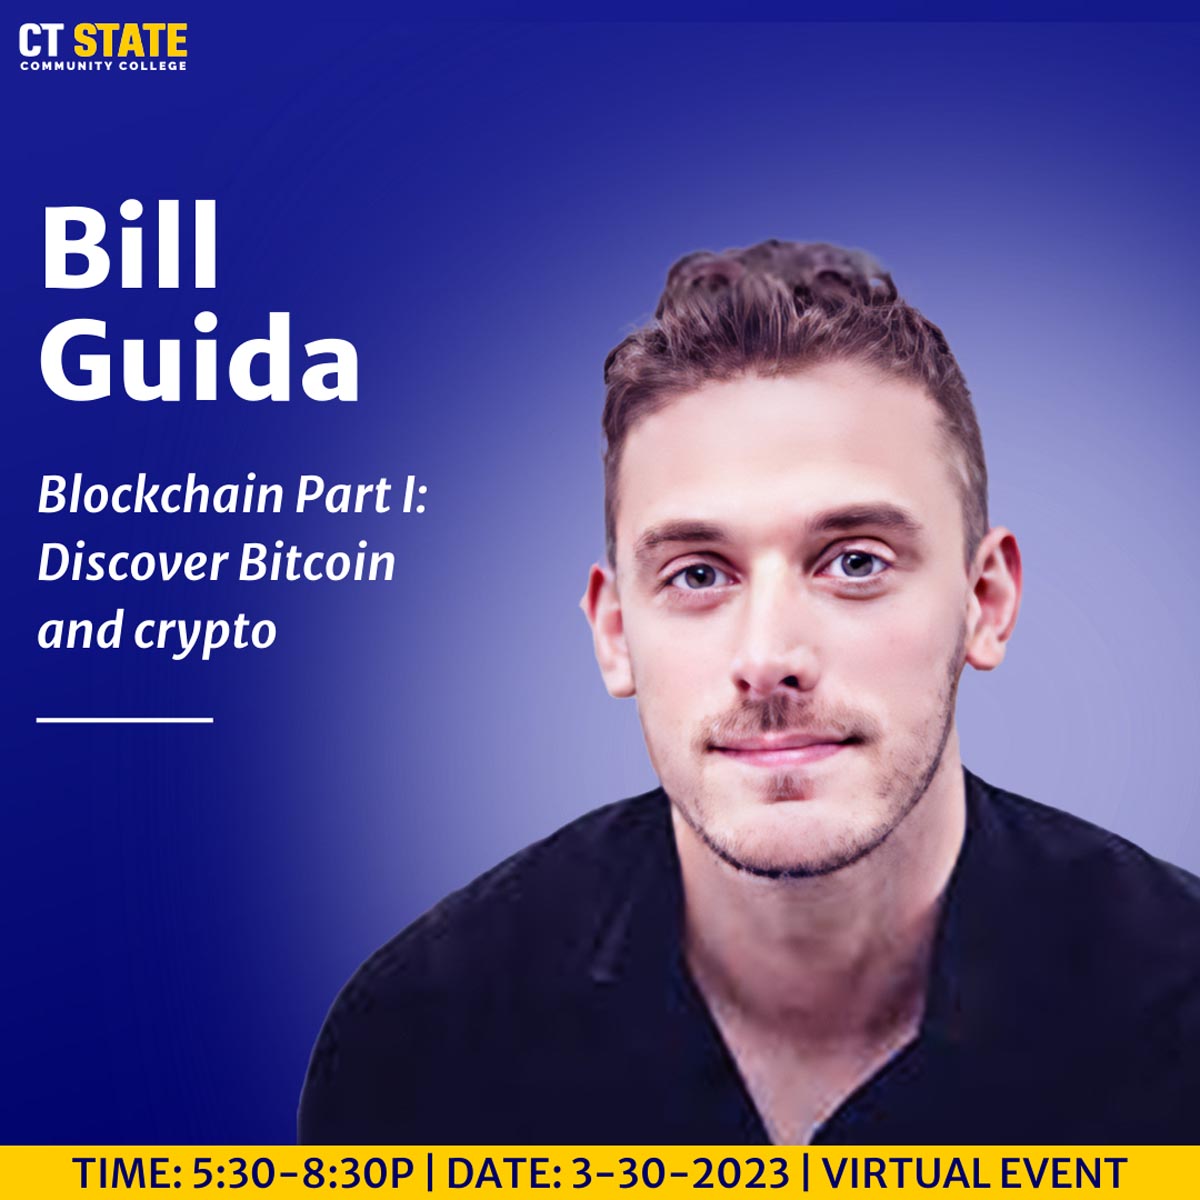 Blockchain I: Discover Bitcoin and crypto (3/30)